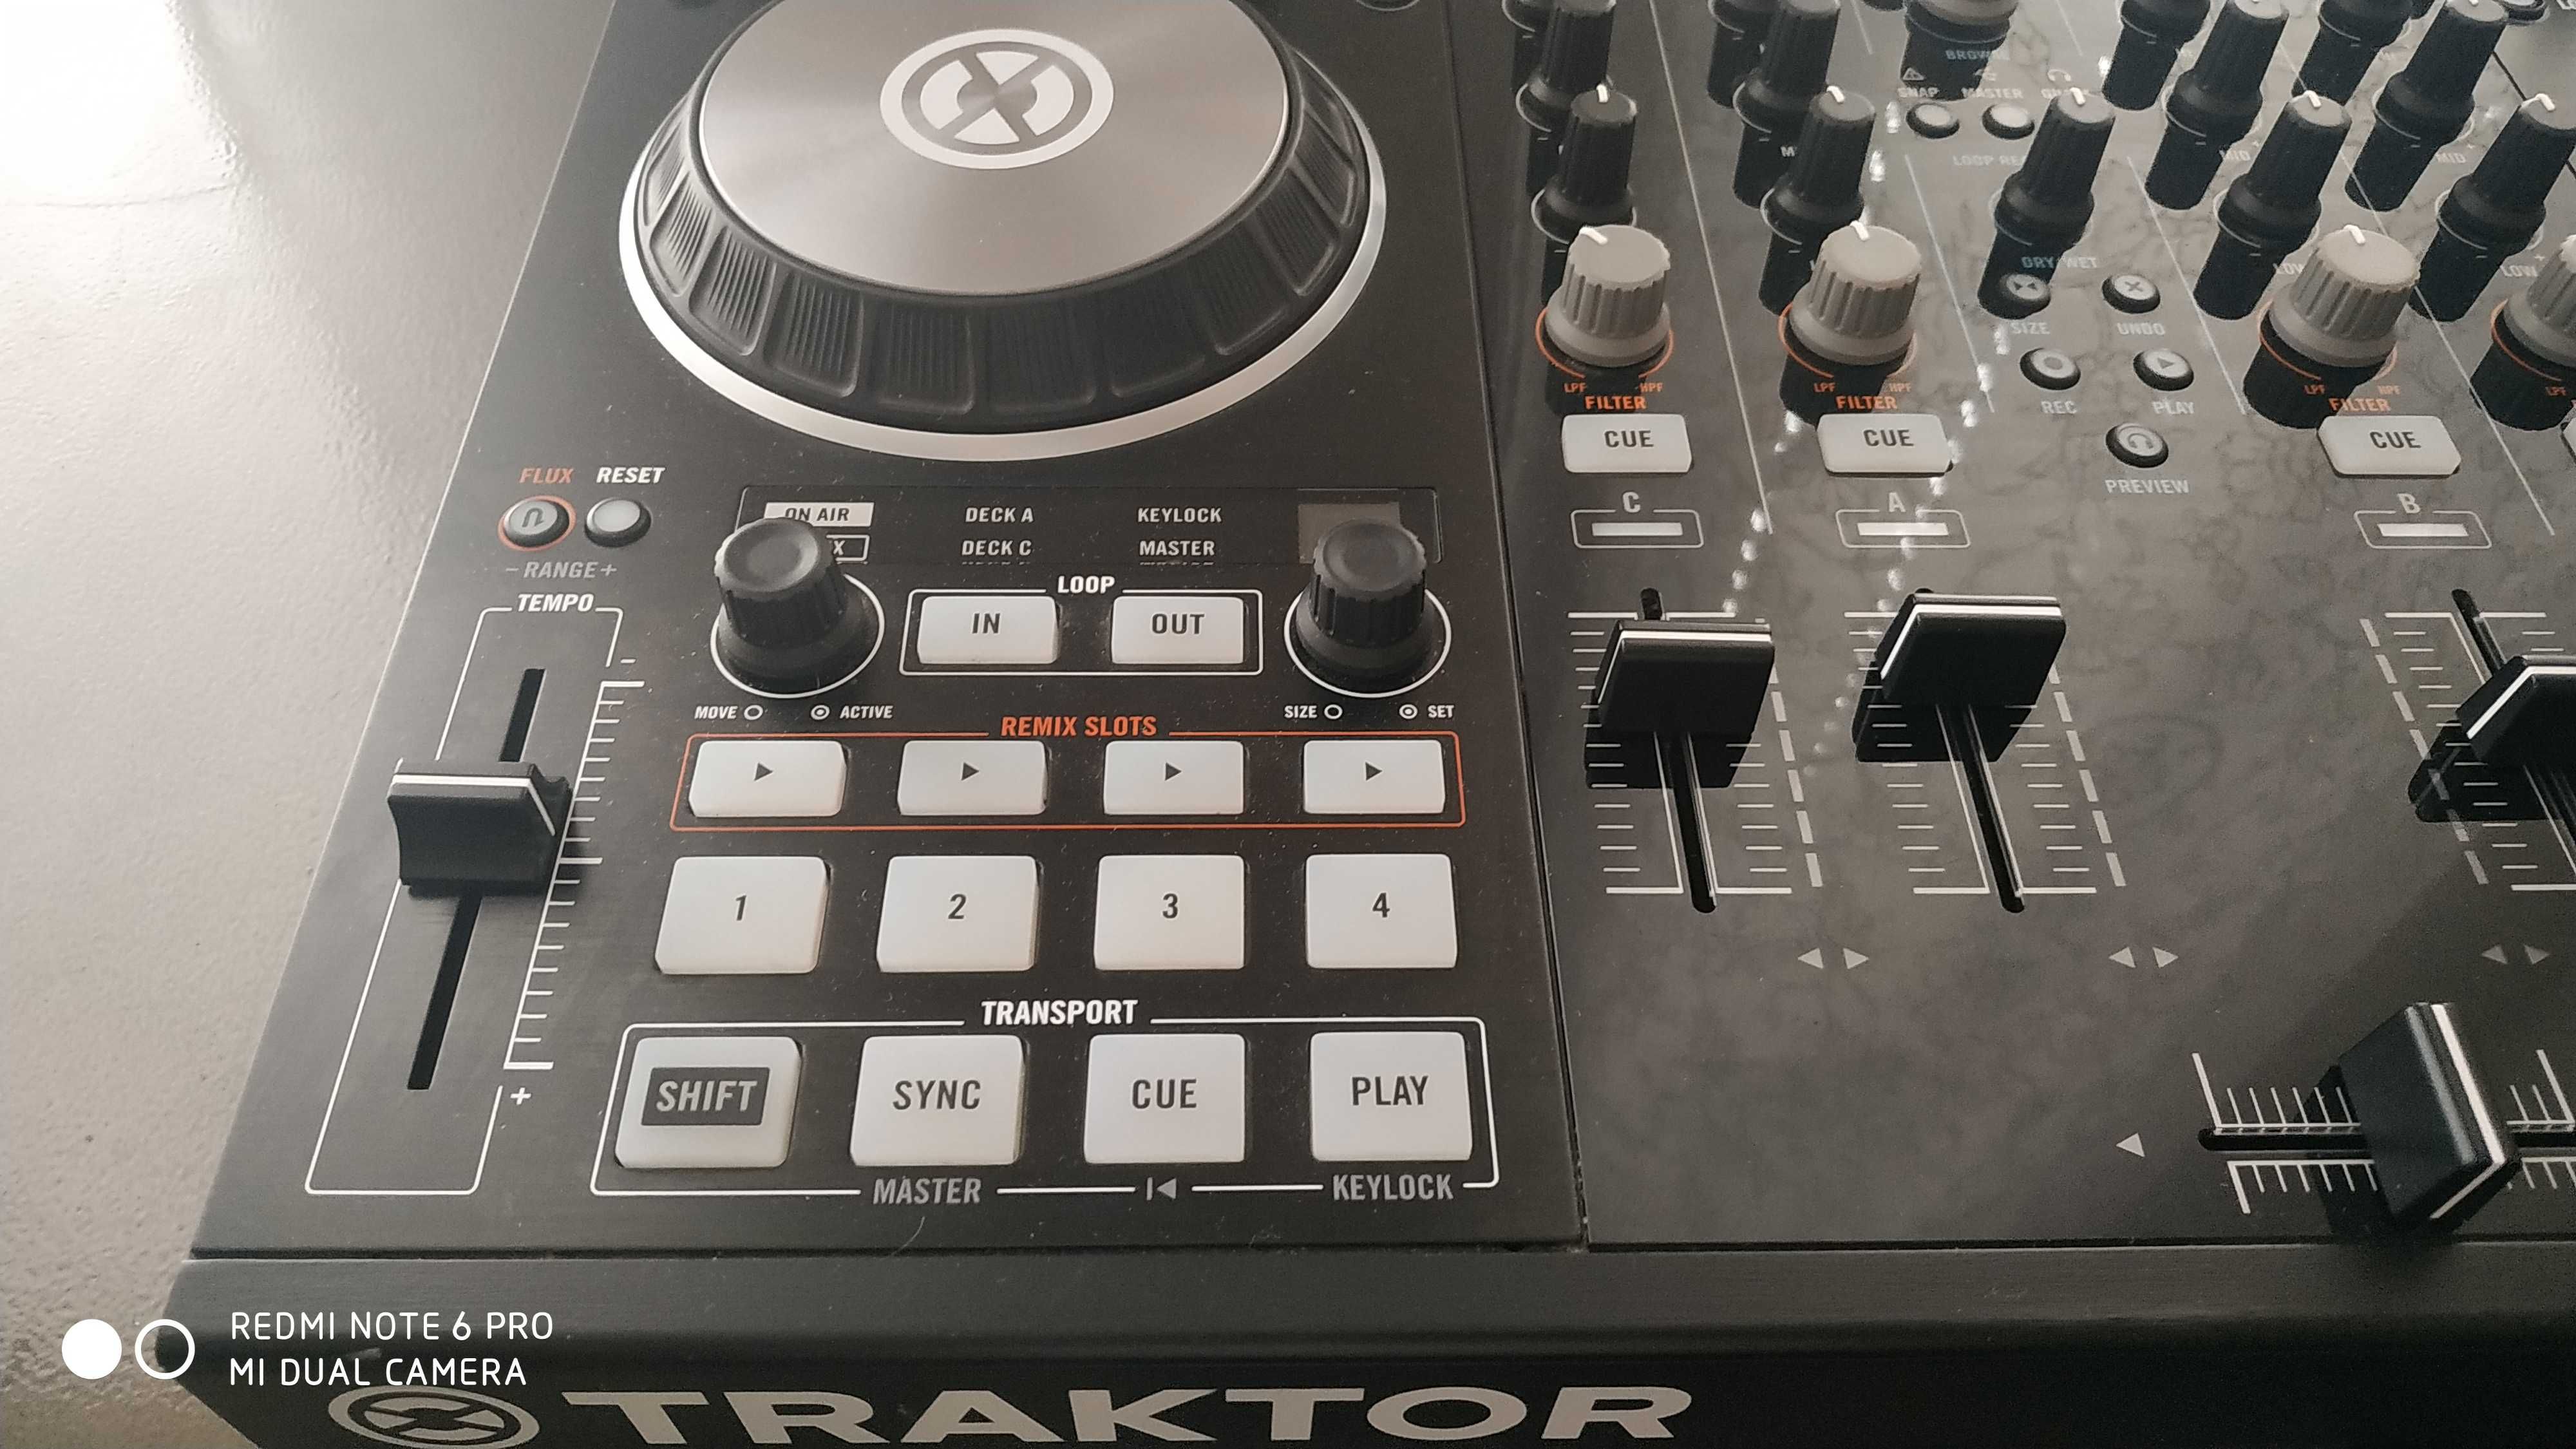 Traktor Kontrol S4 MK2 - DJ Контролер